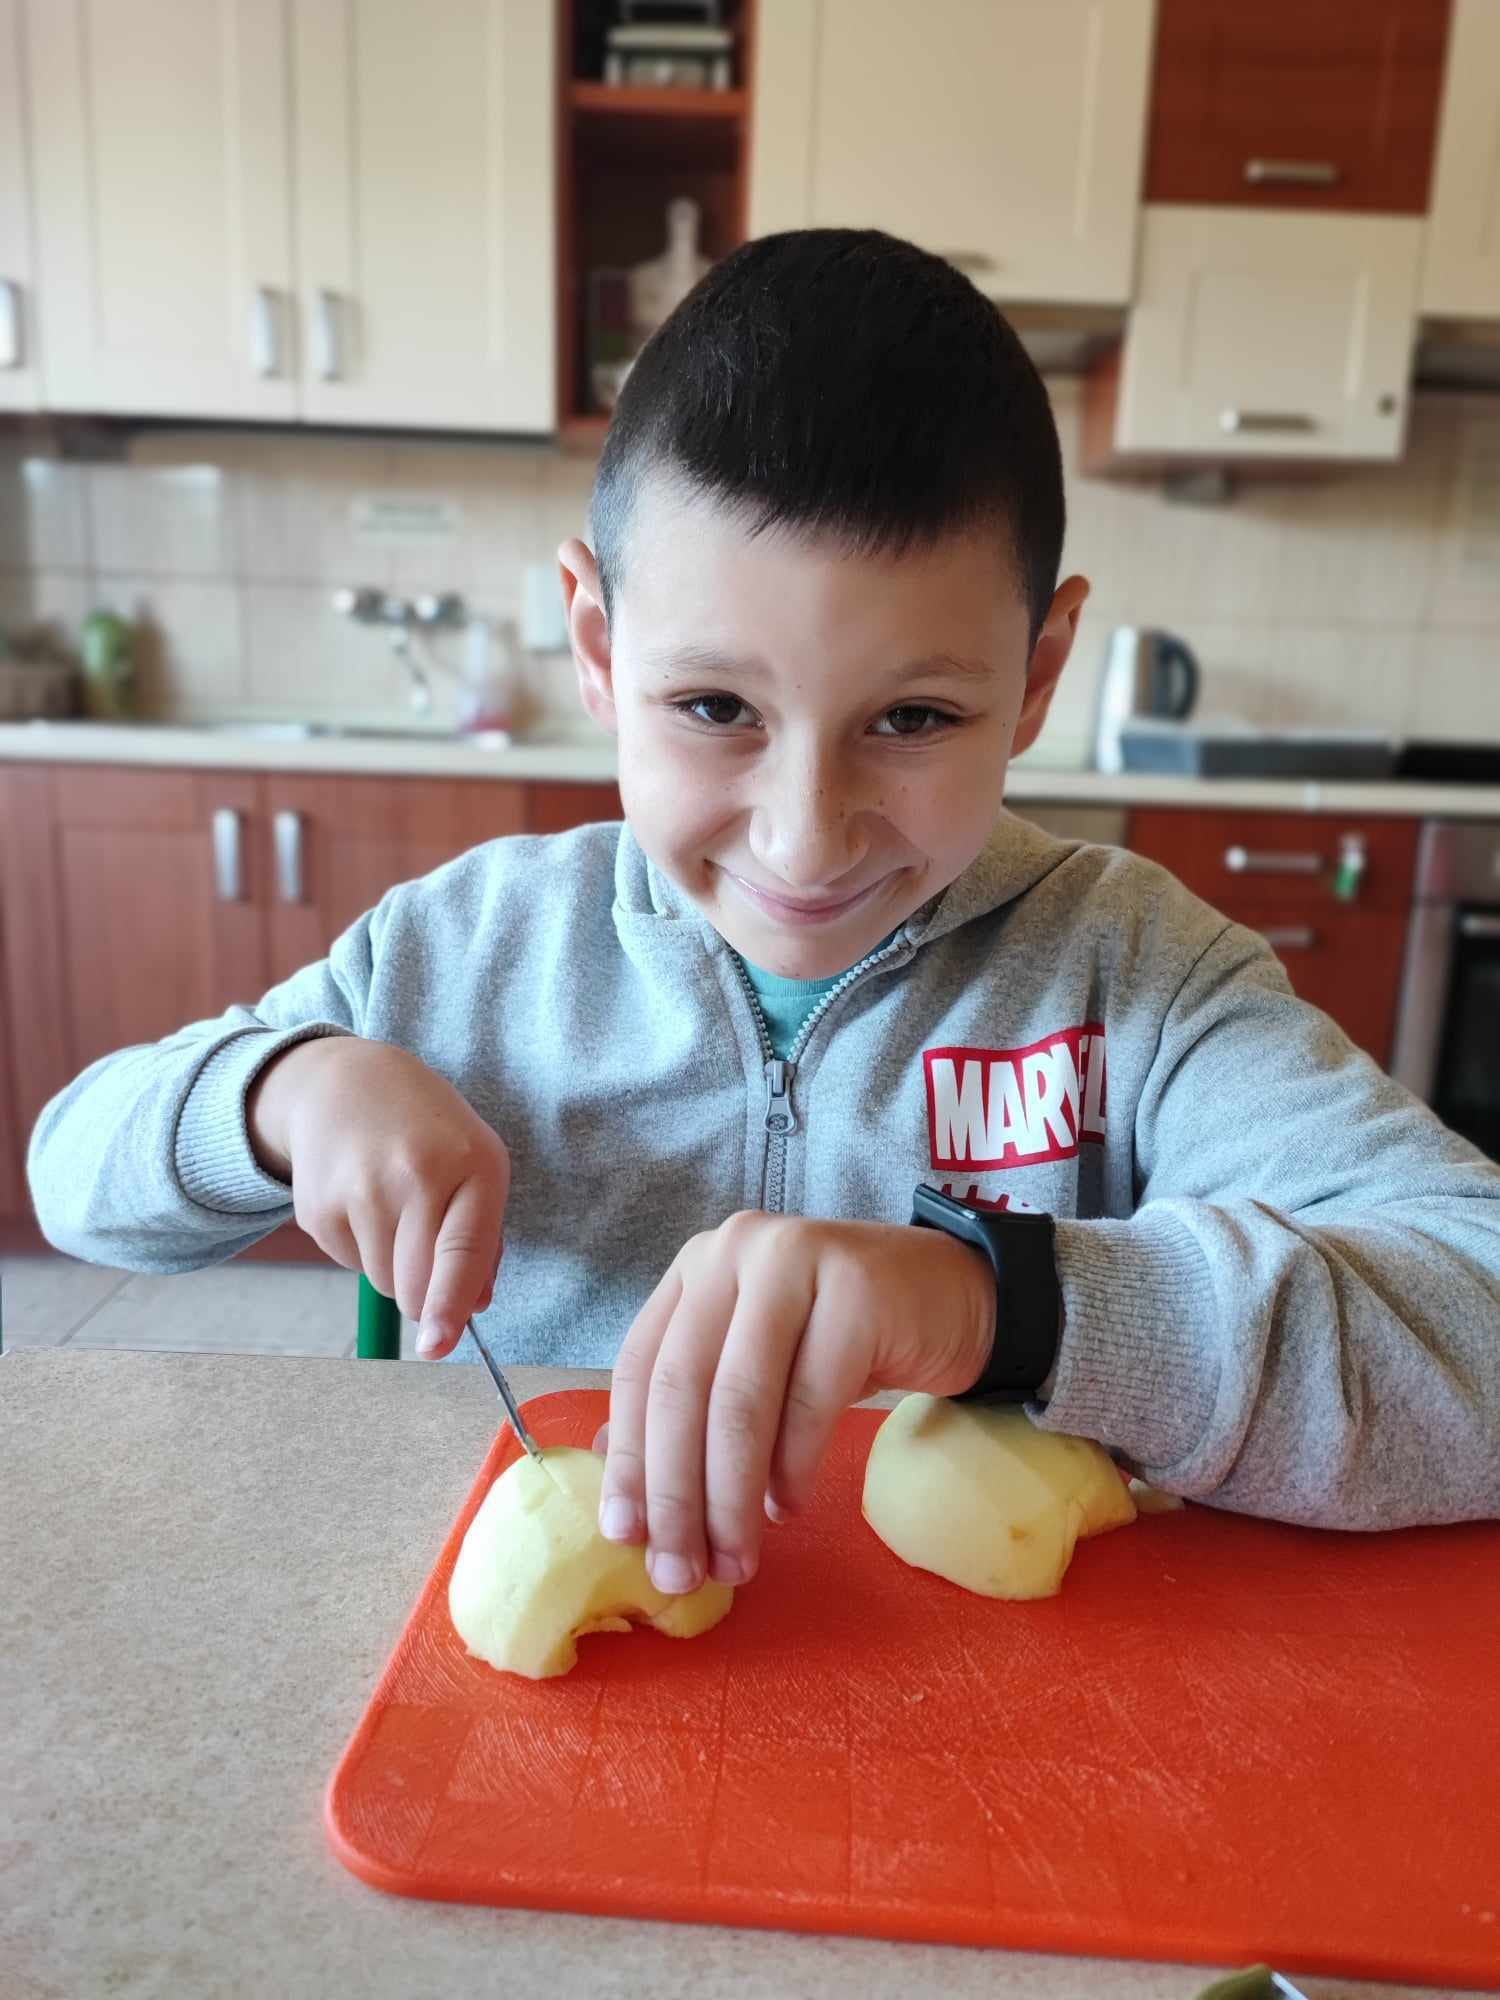 Na zdjęciu znajduje się chłopiec w szarej bluzie krojący nożem obrane jabłko.